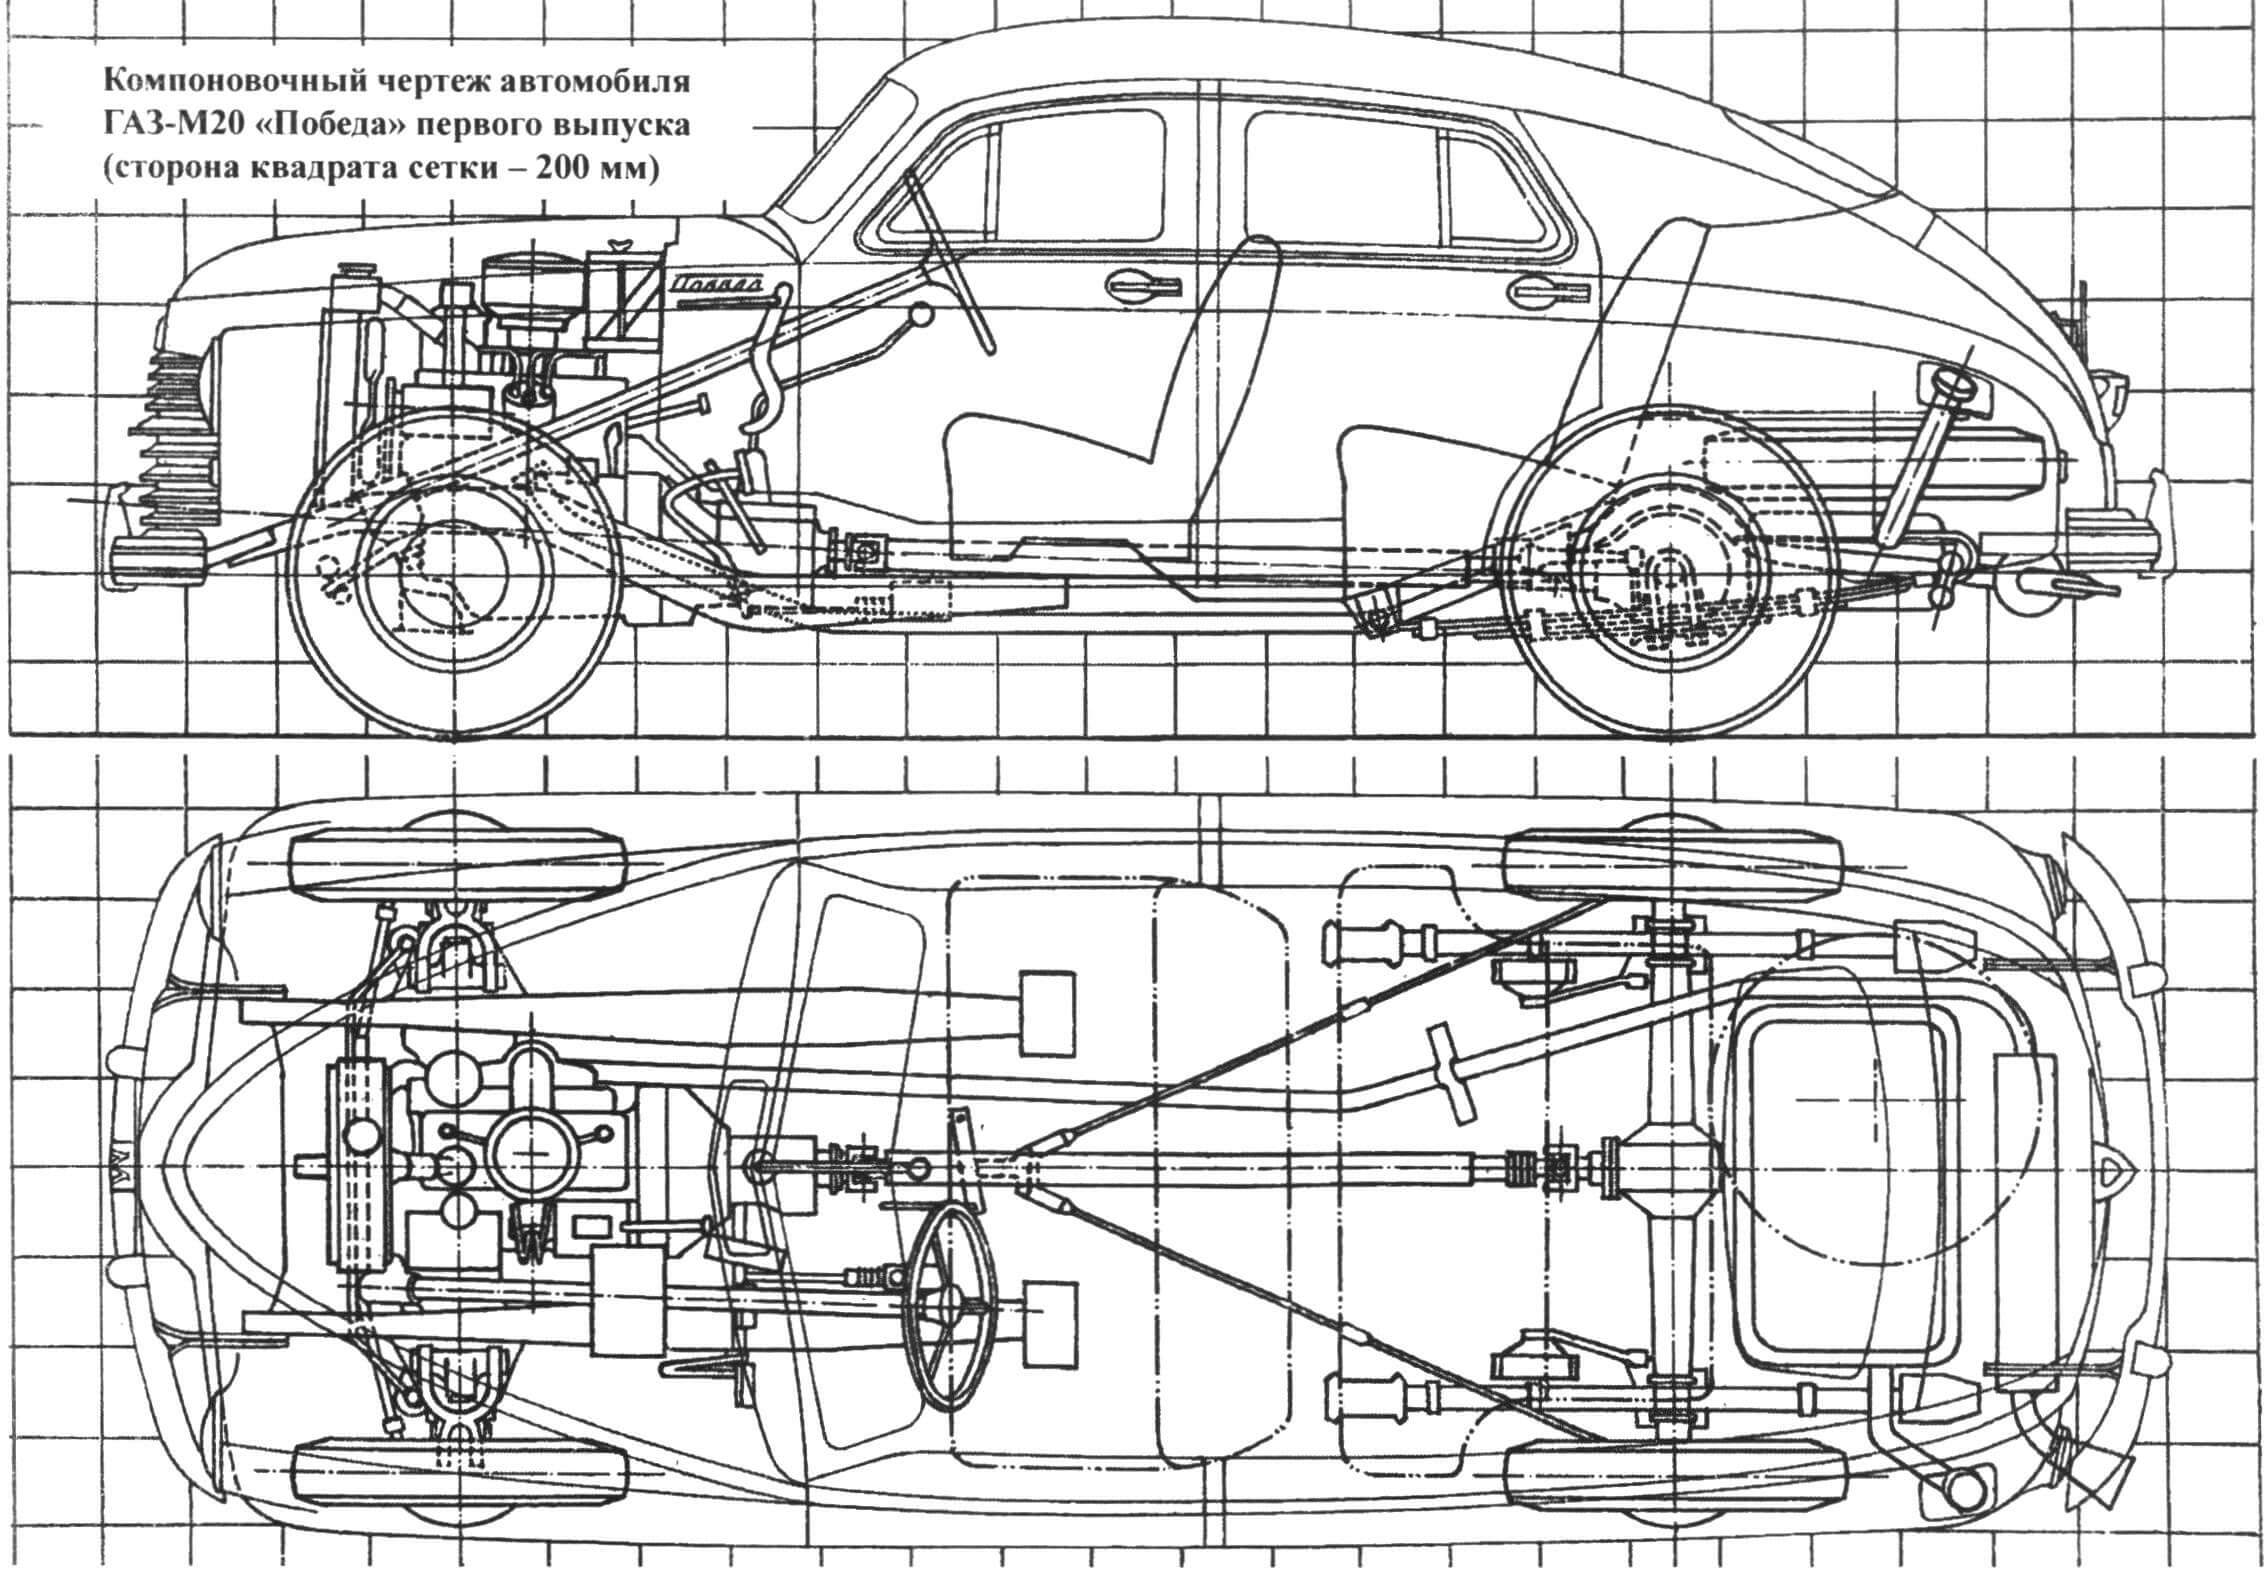 Компоновочный чертеж автомобиля ГАЗ-М20 «Победа» первого выпуска (сторона квадрата сетки - 200 мм)